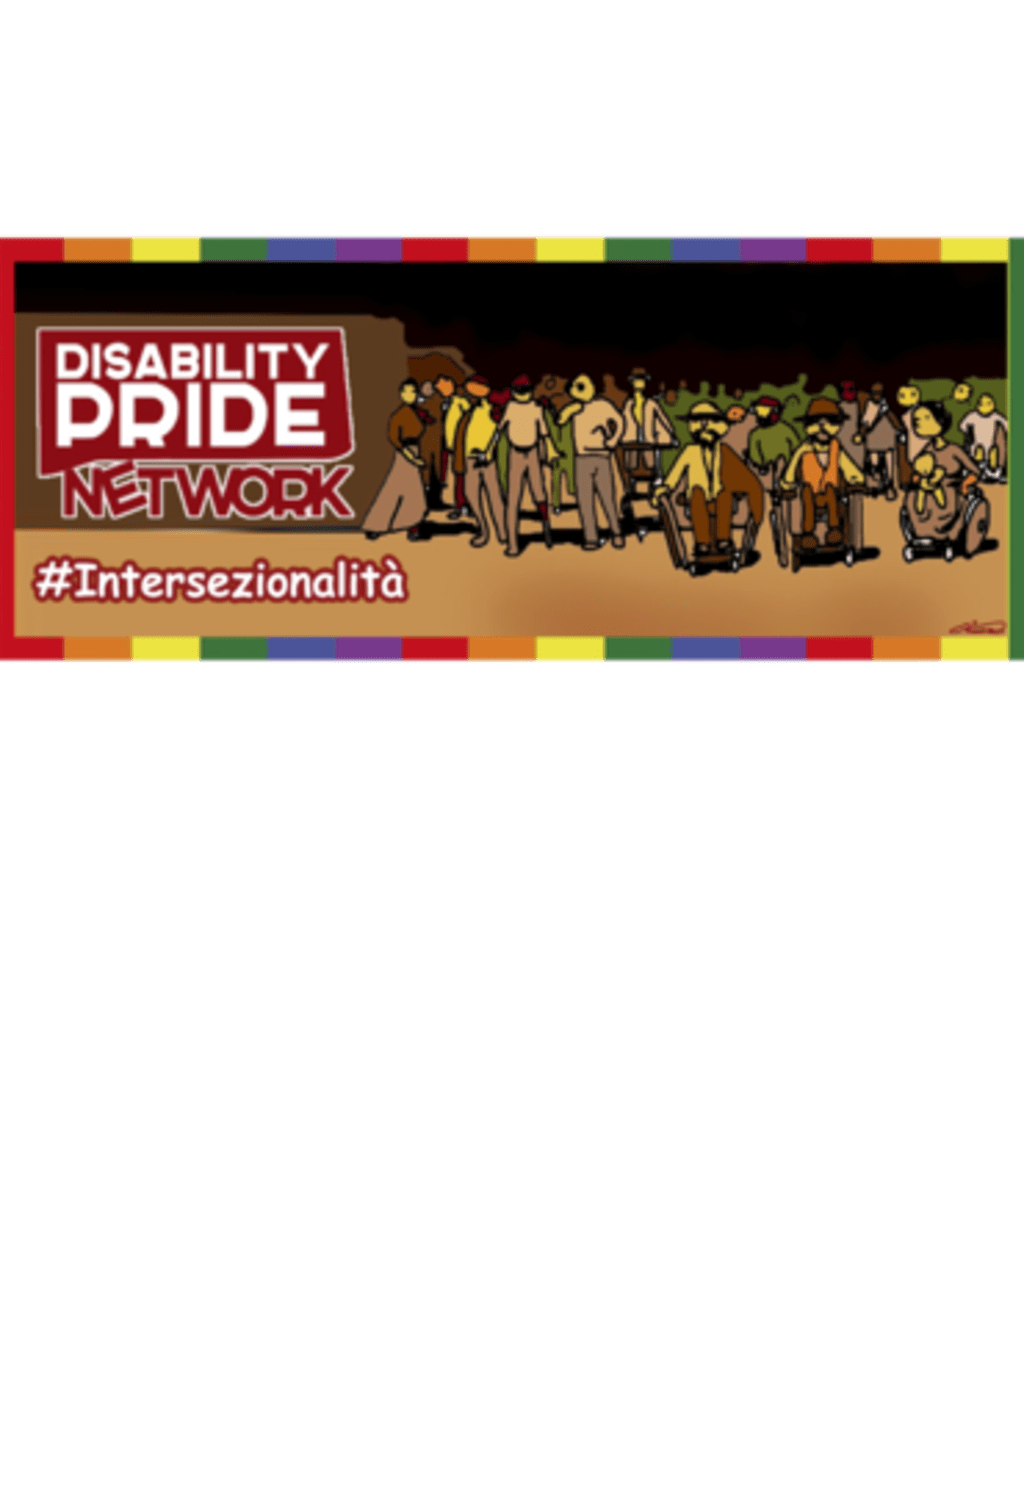 Gioma per Disability Pride 2021